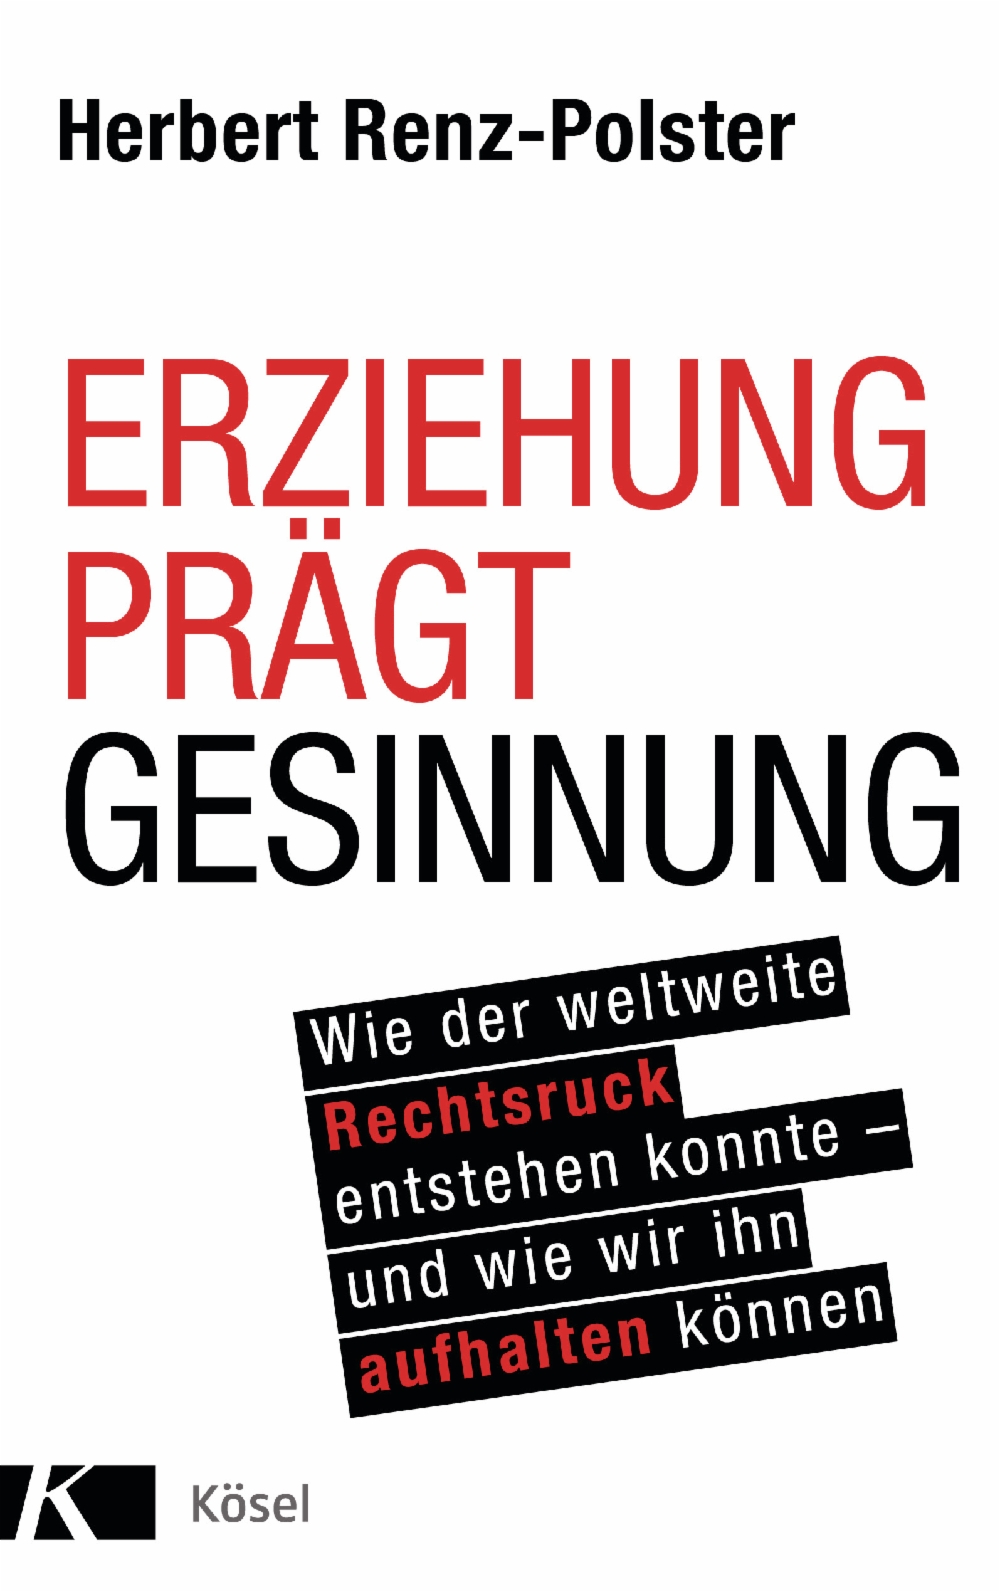 Hubert Renz-Polster: Erziehung prägt Gesinnung (Hardcover, Deutsch language, 2020, Penguin Random House Verlag)